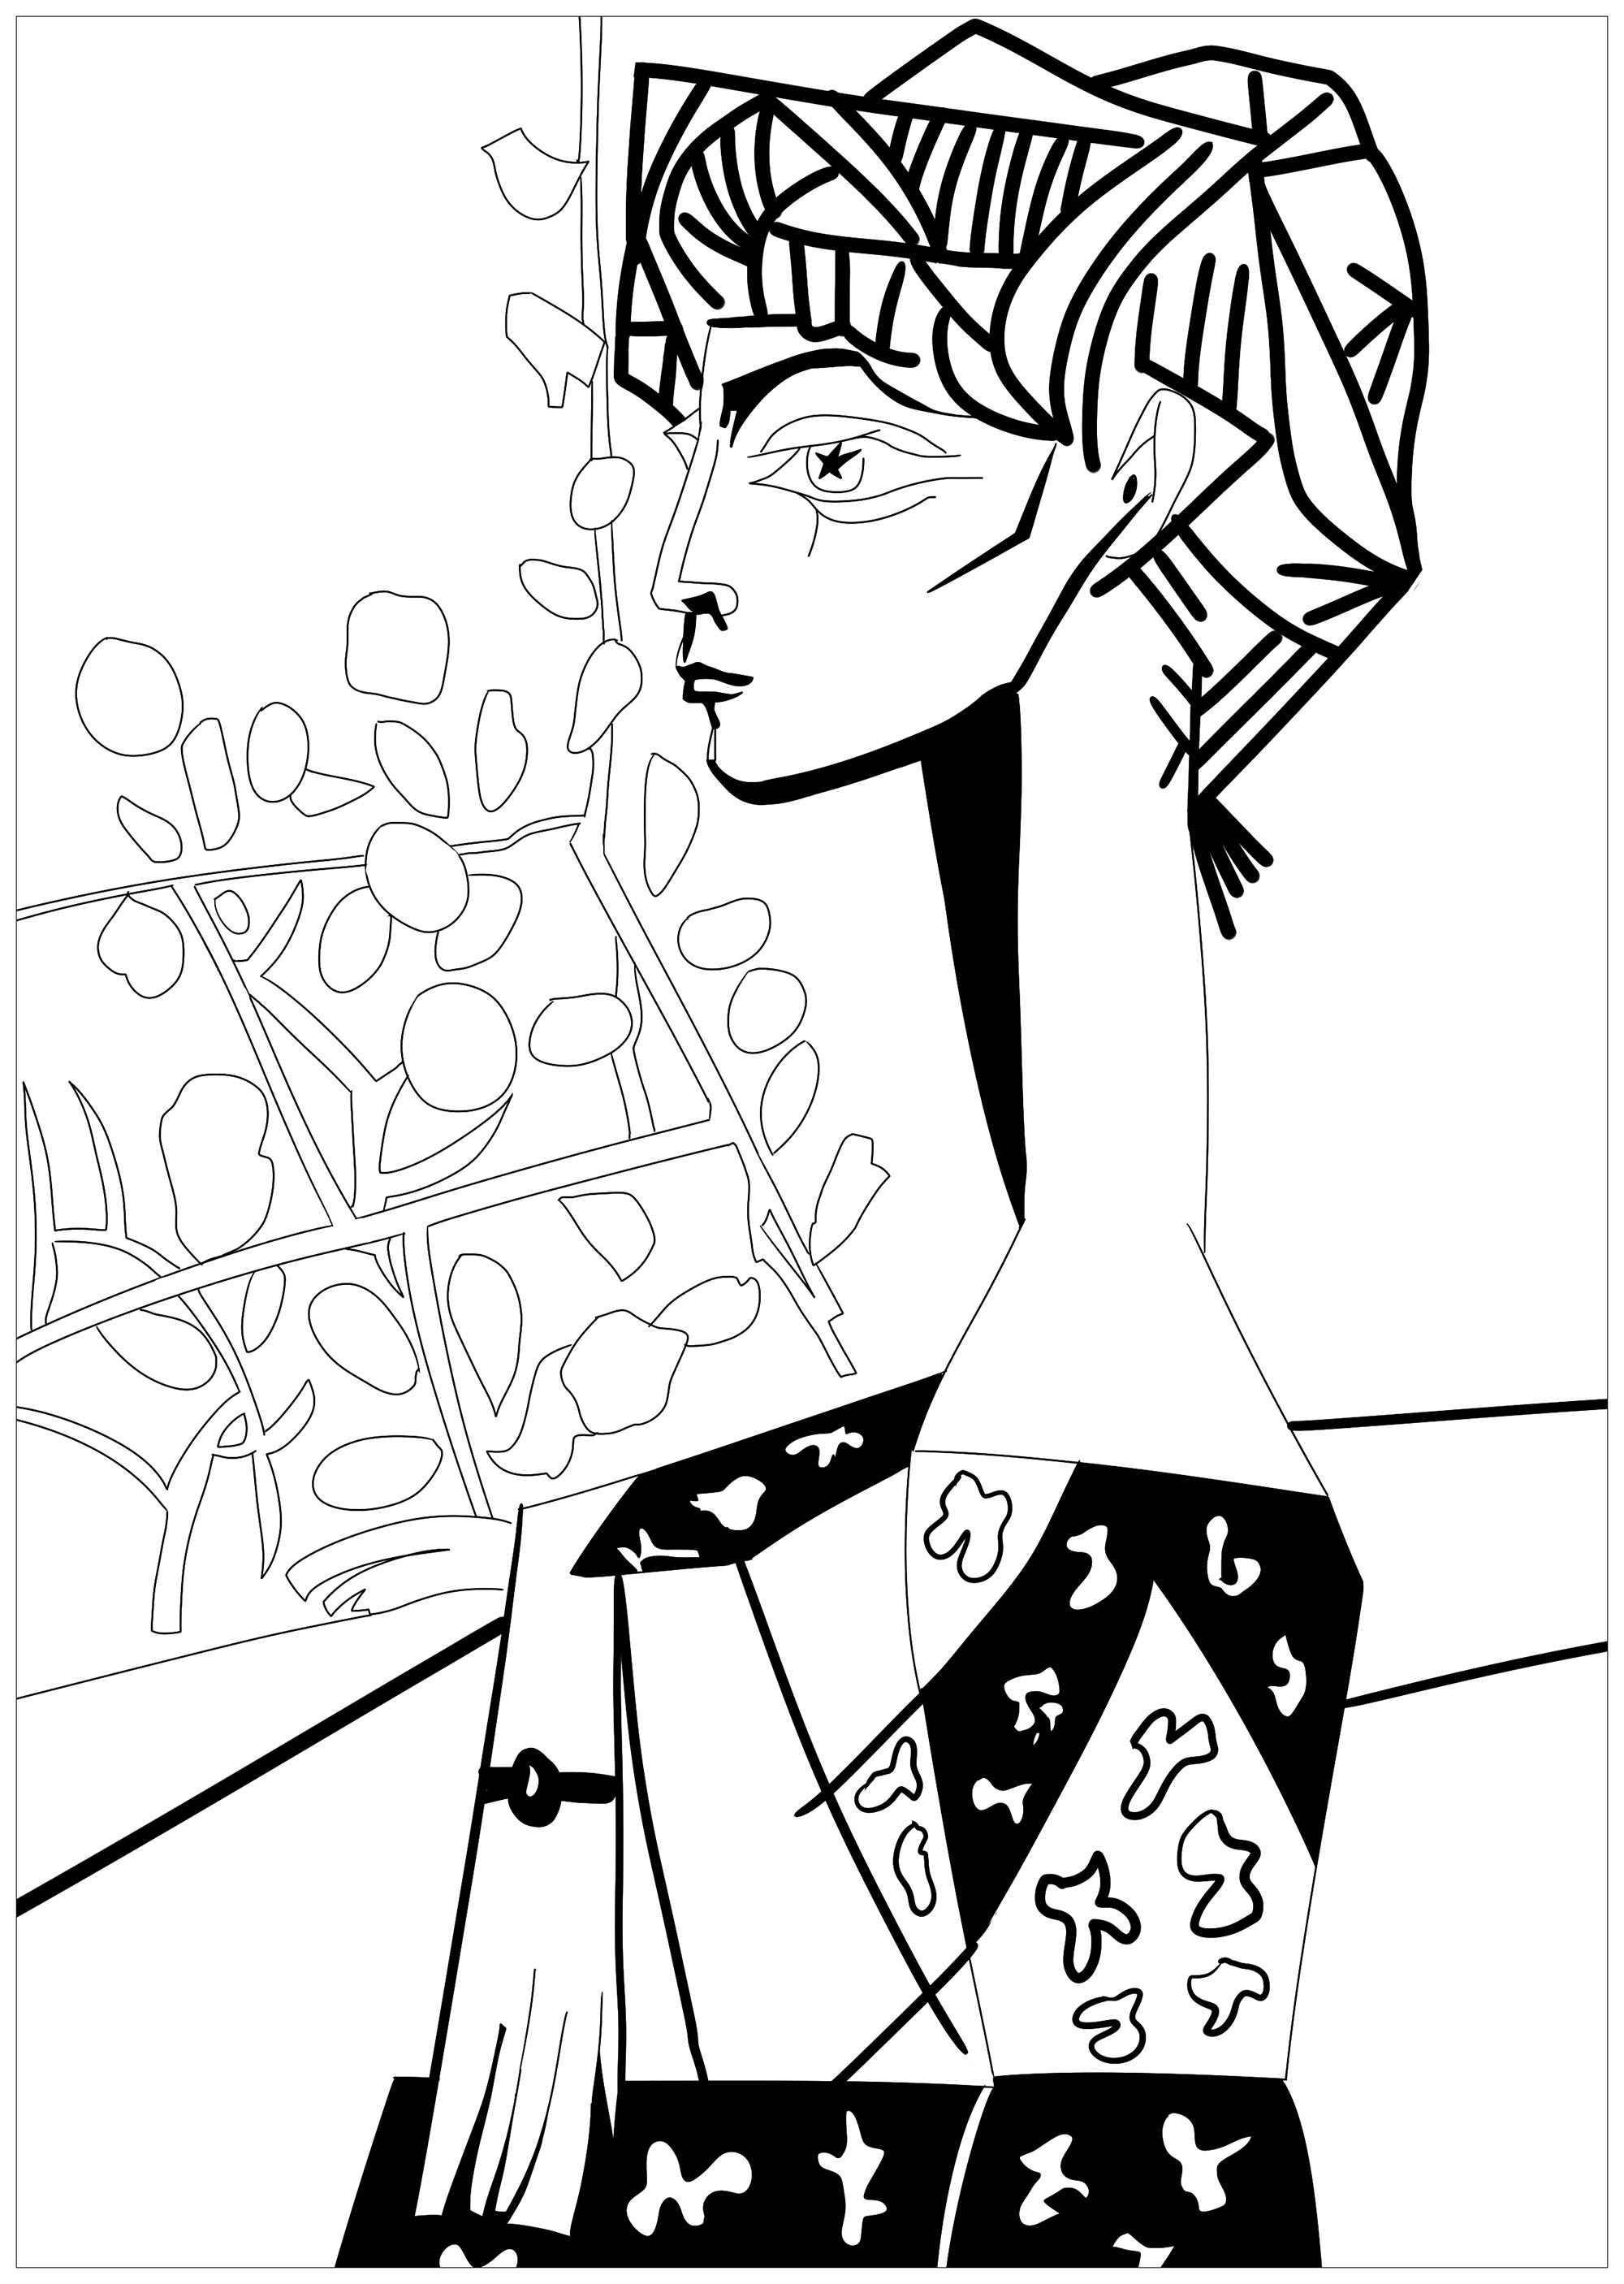 Malvorlage inspiriert von einem Meisterwerk von Pablo Picasso: Jacqueline mit Blumen